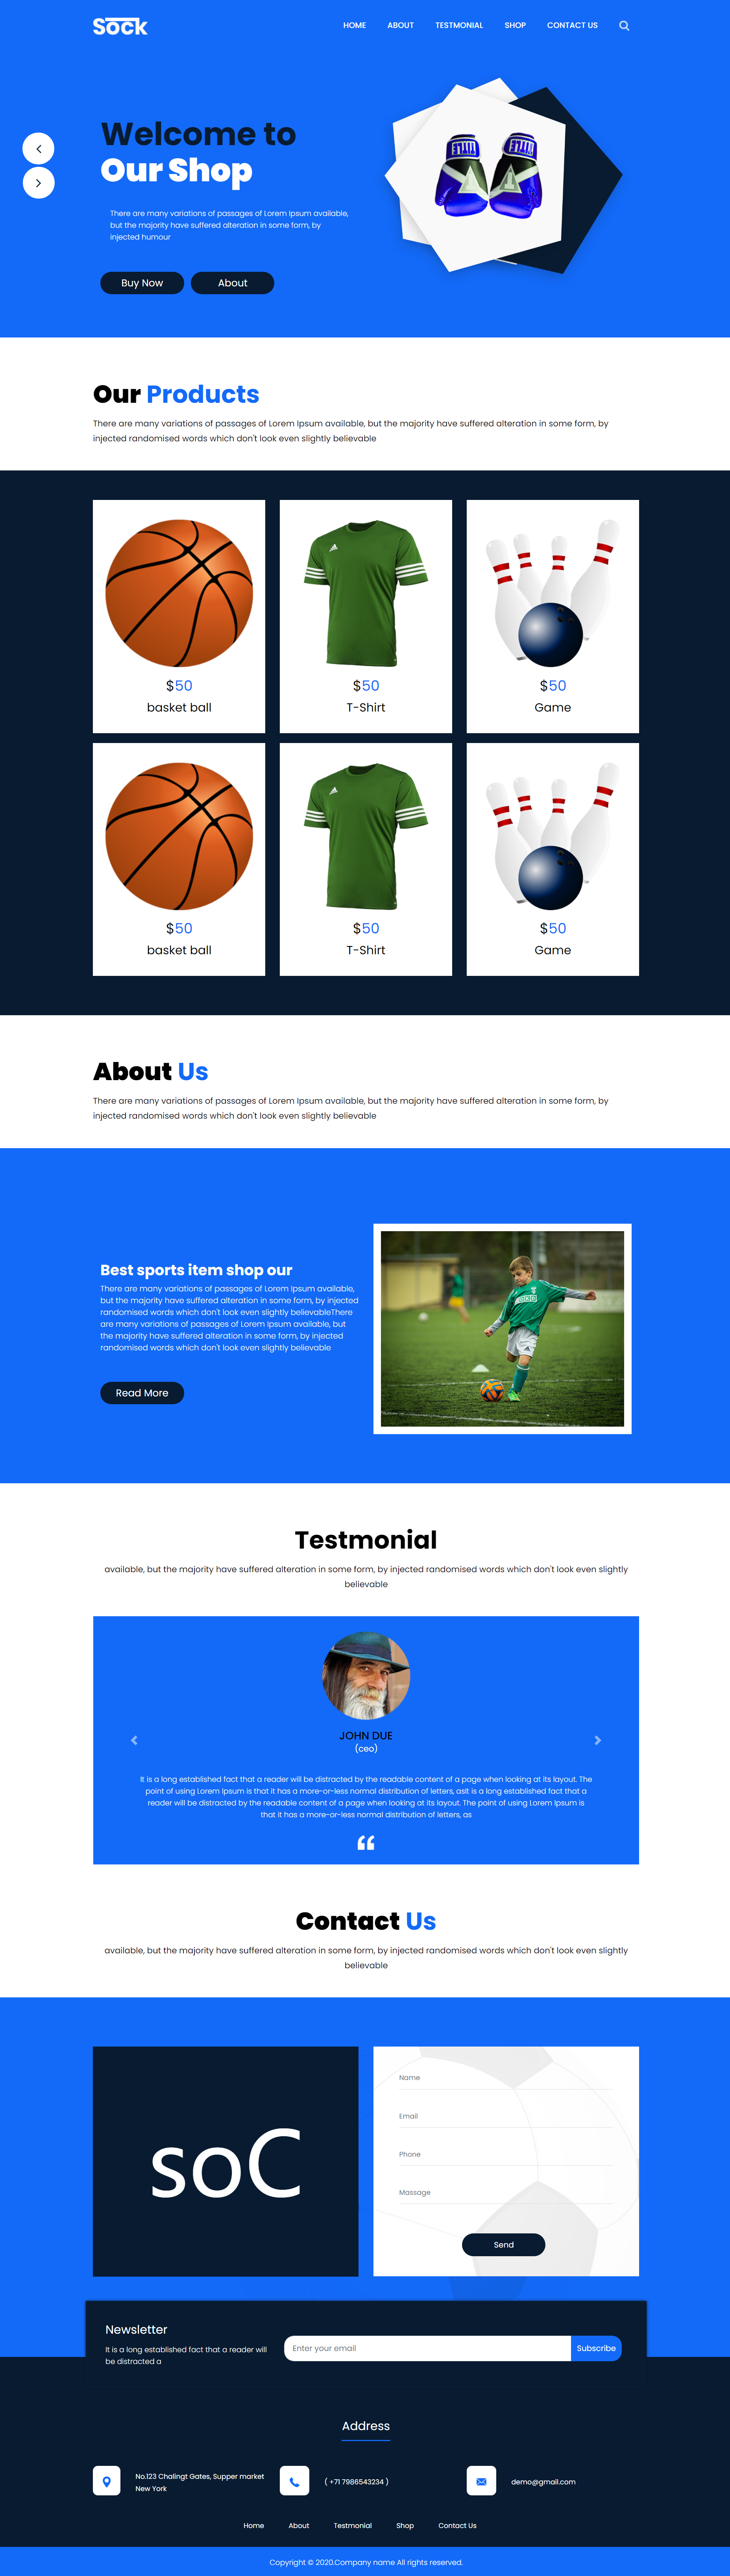 蓝色简洁风格响应式体育运动用品企业网站模板